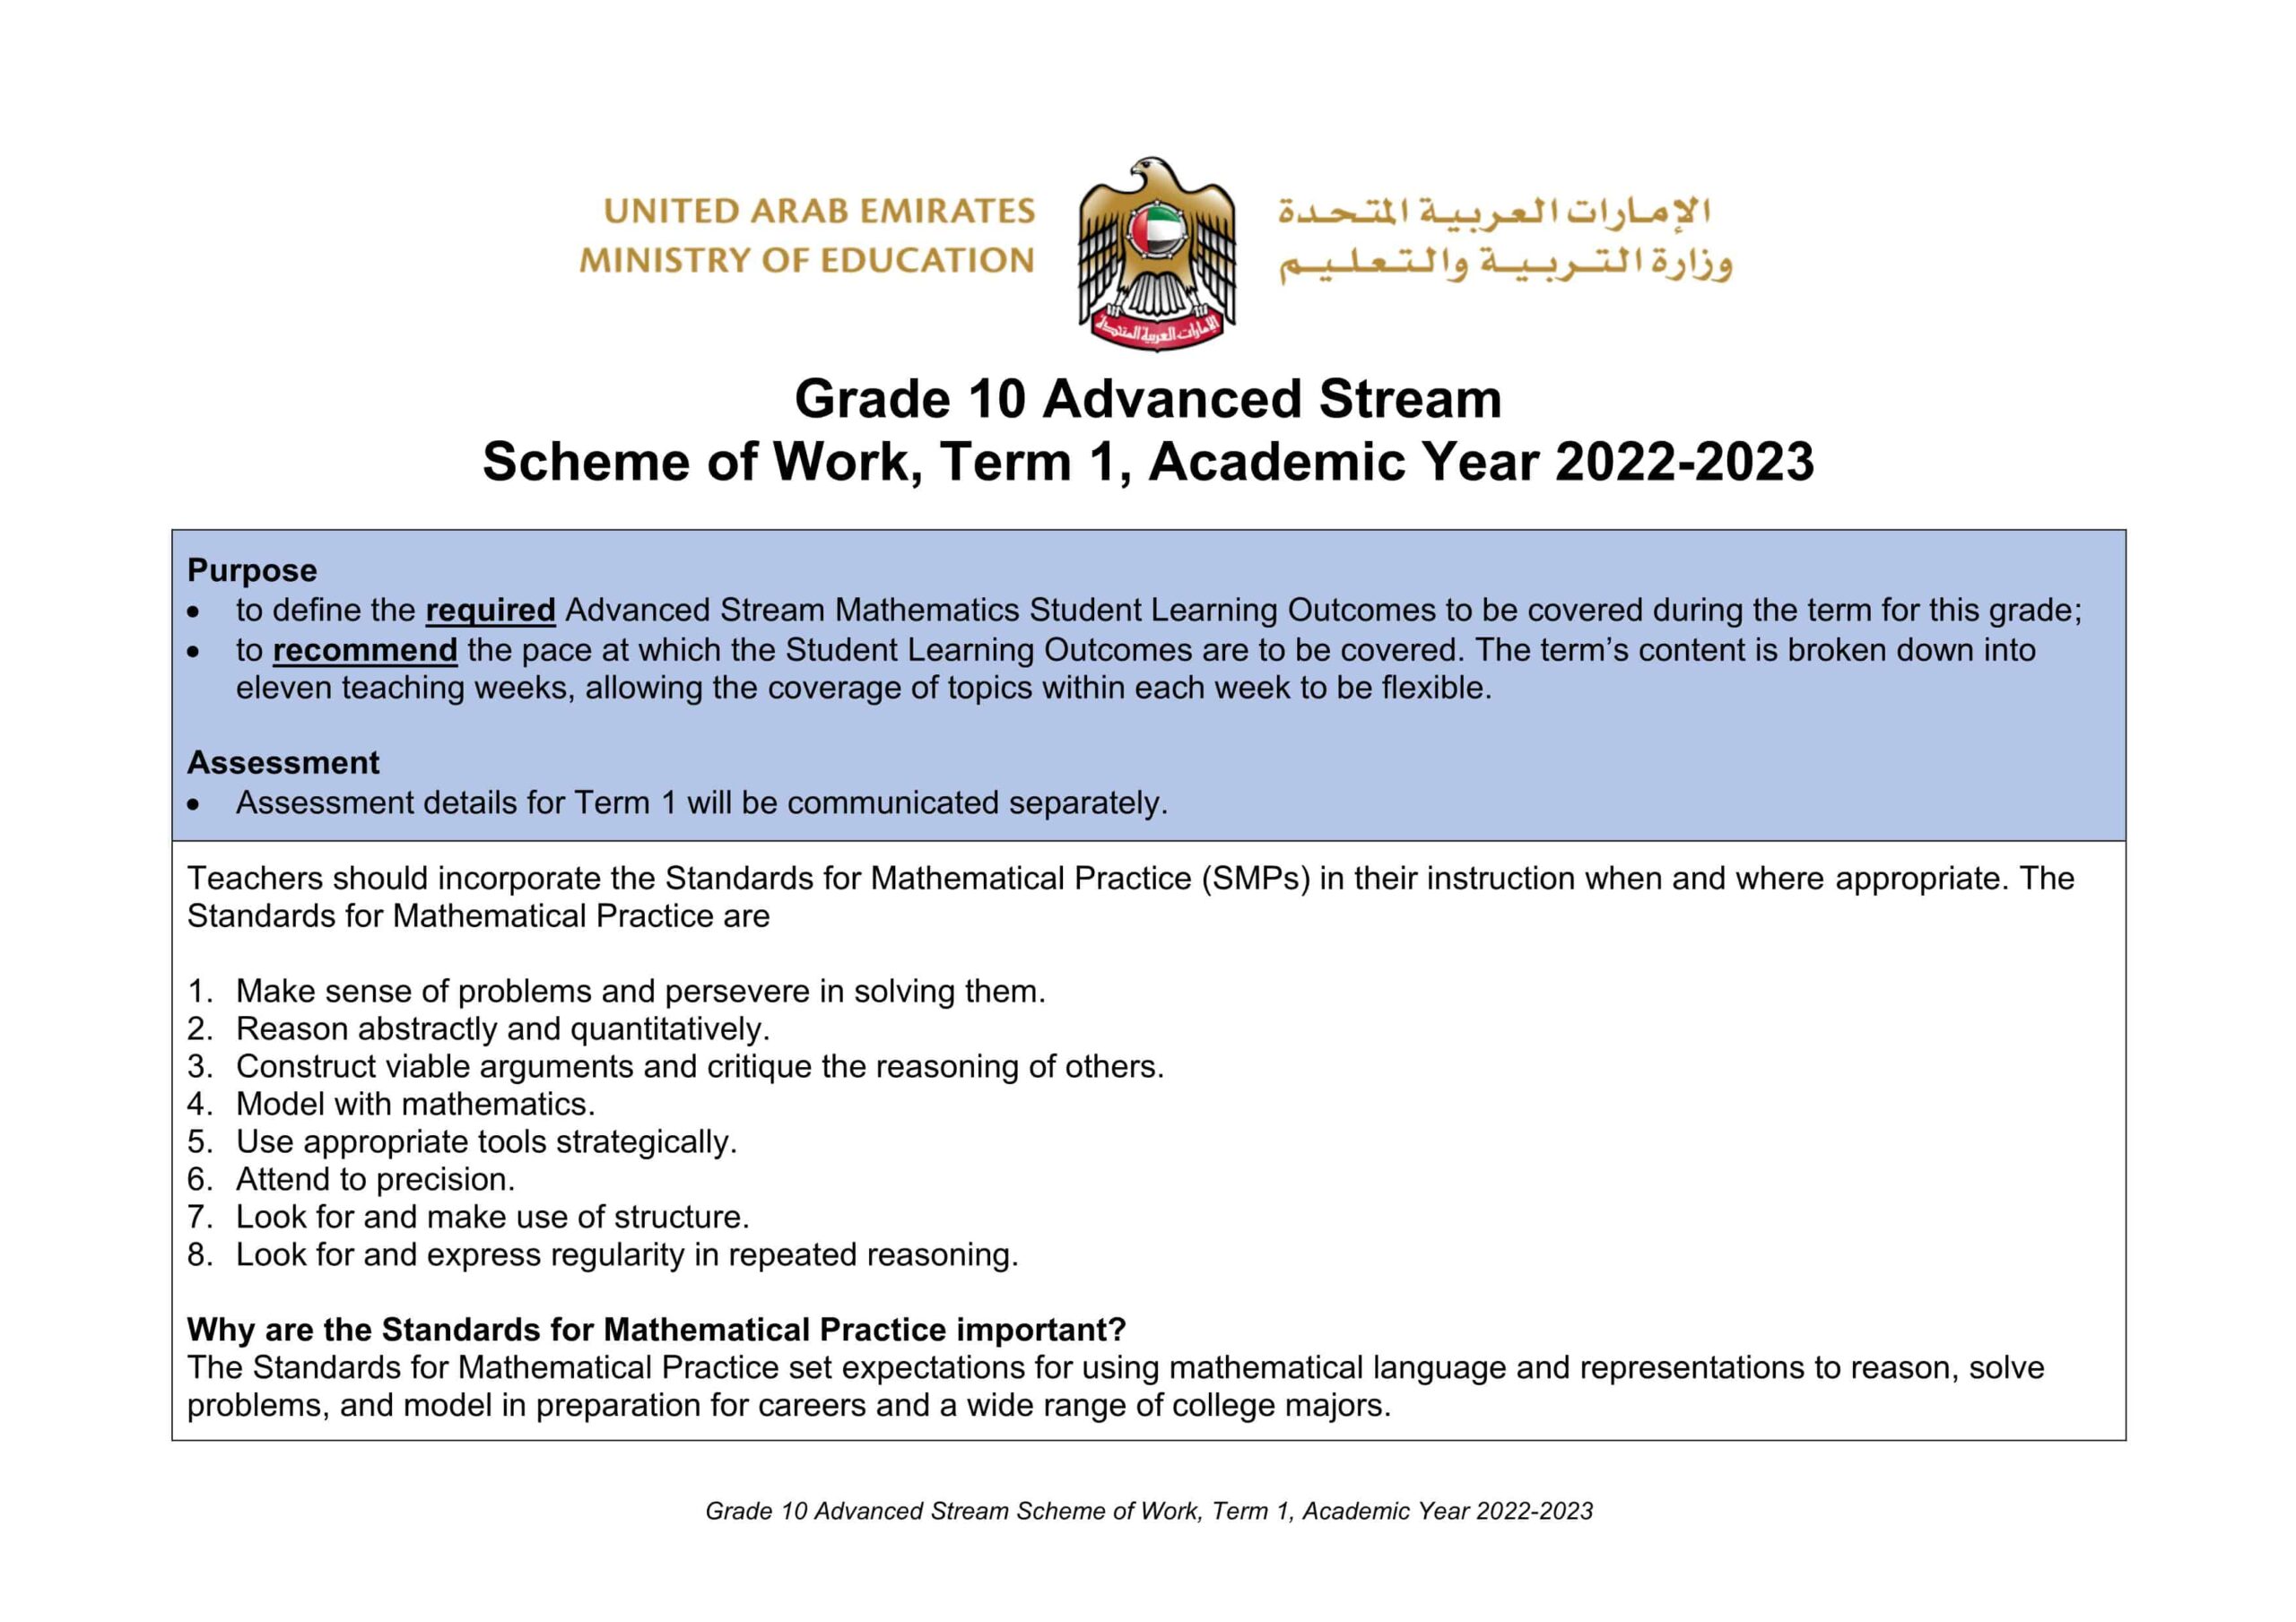 الخطة الفصلية Scheme of Work الرياضيات المتكاملة الصف العاشر Reveal الفصل الدراسي الأول 2022-2023